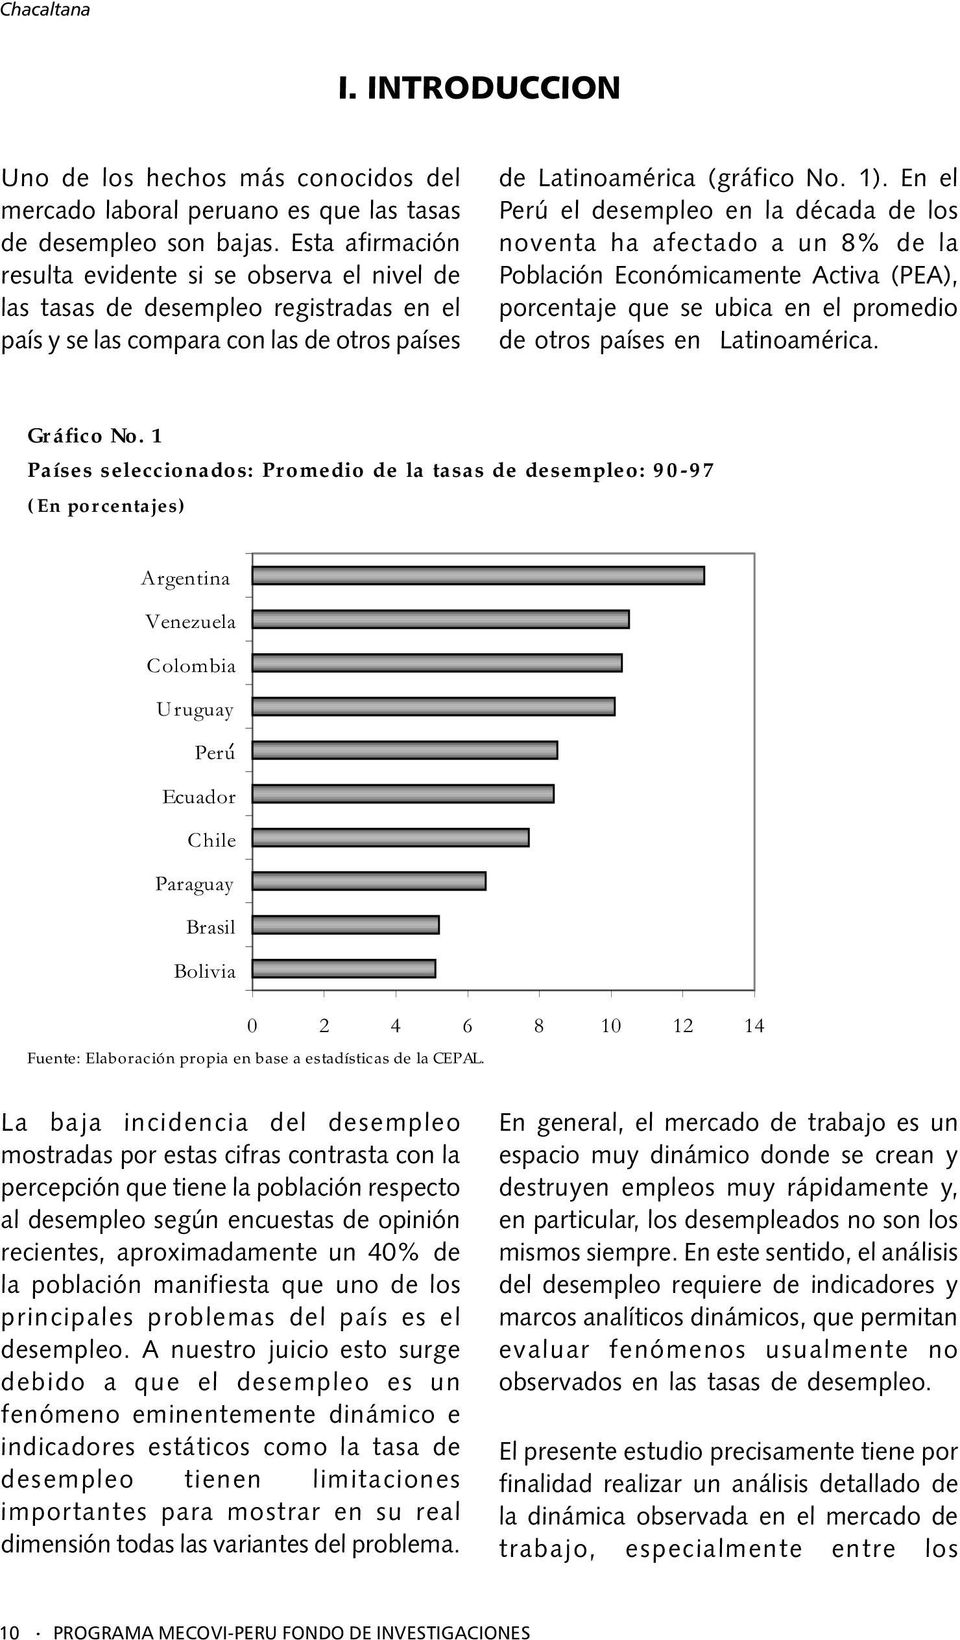 En el Perú el desempleo en la década de los noventa ha afectado a un 8% de la Población Económicamente Activa (PEA), porcentaje que se ubica en el promedio de otros países en Latinoamérica.